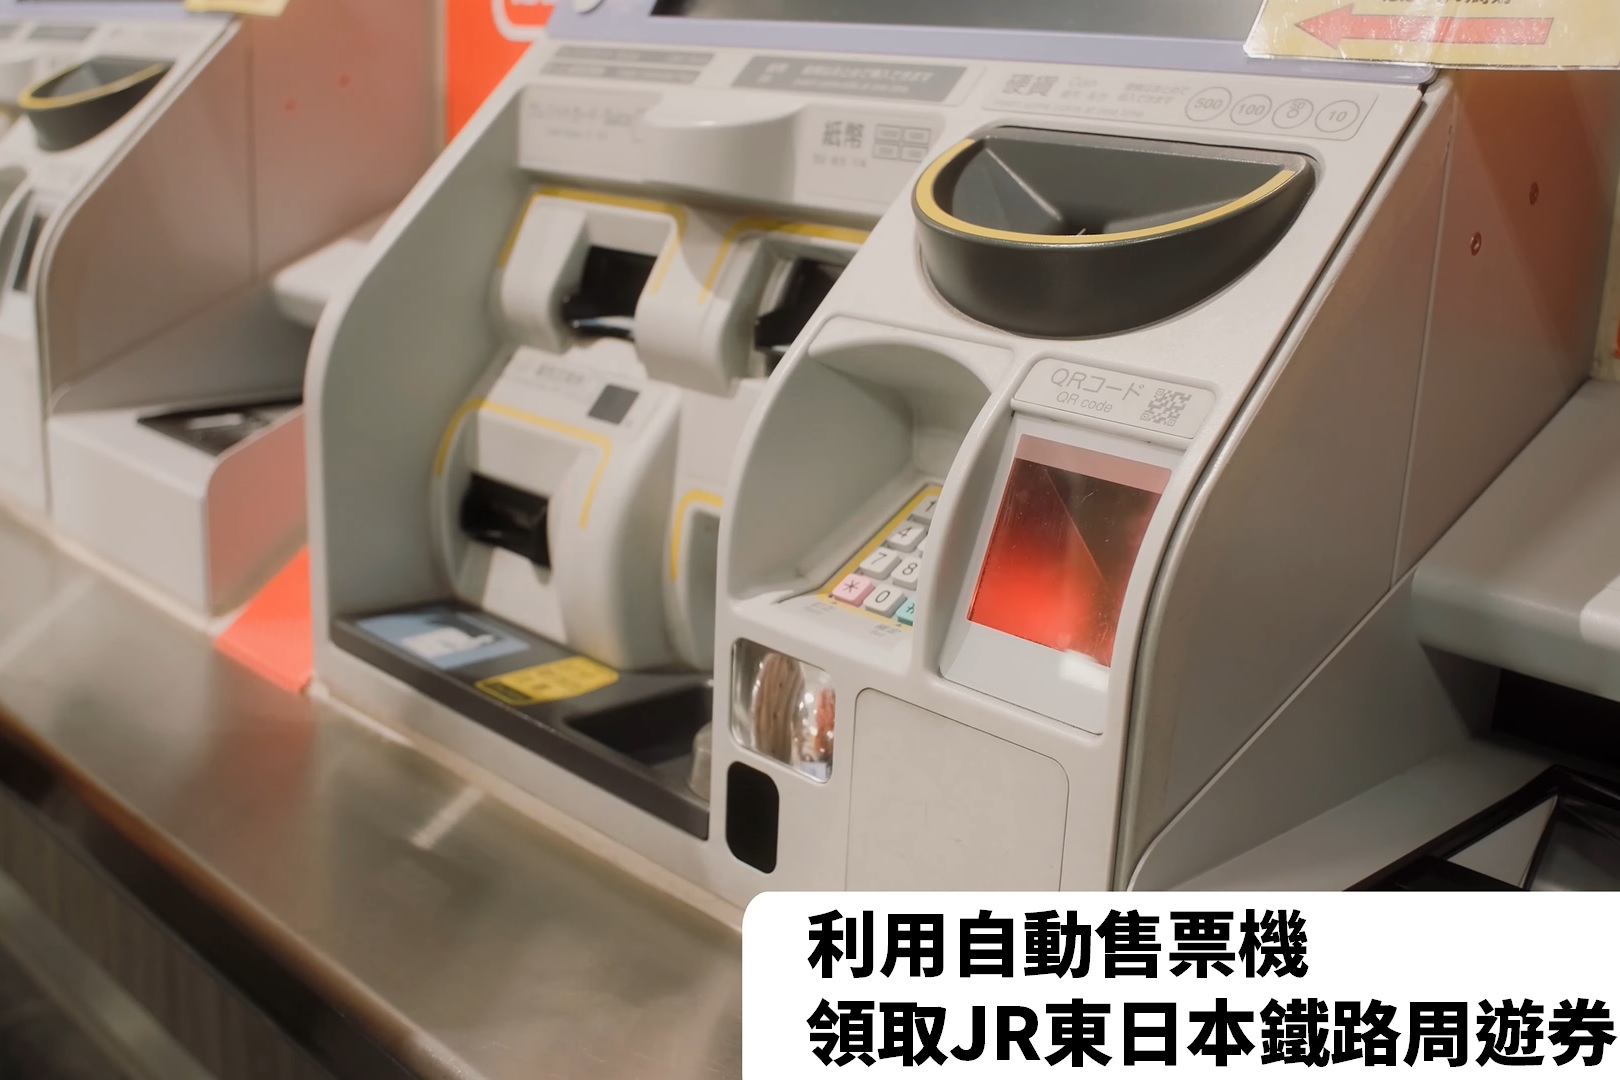 利用自動售票機領取JR東日本鐵路周遊券《影片》